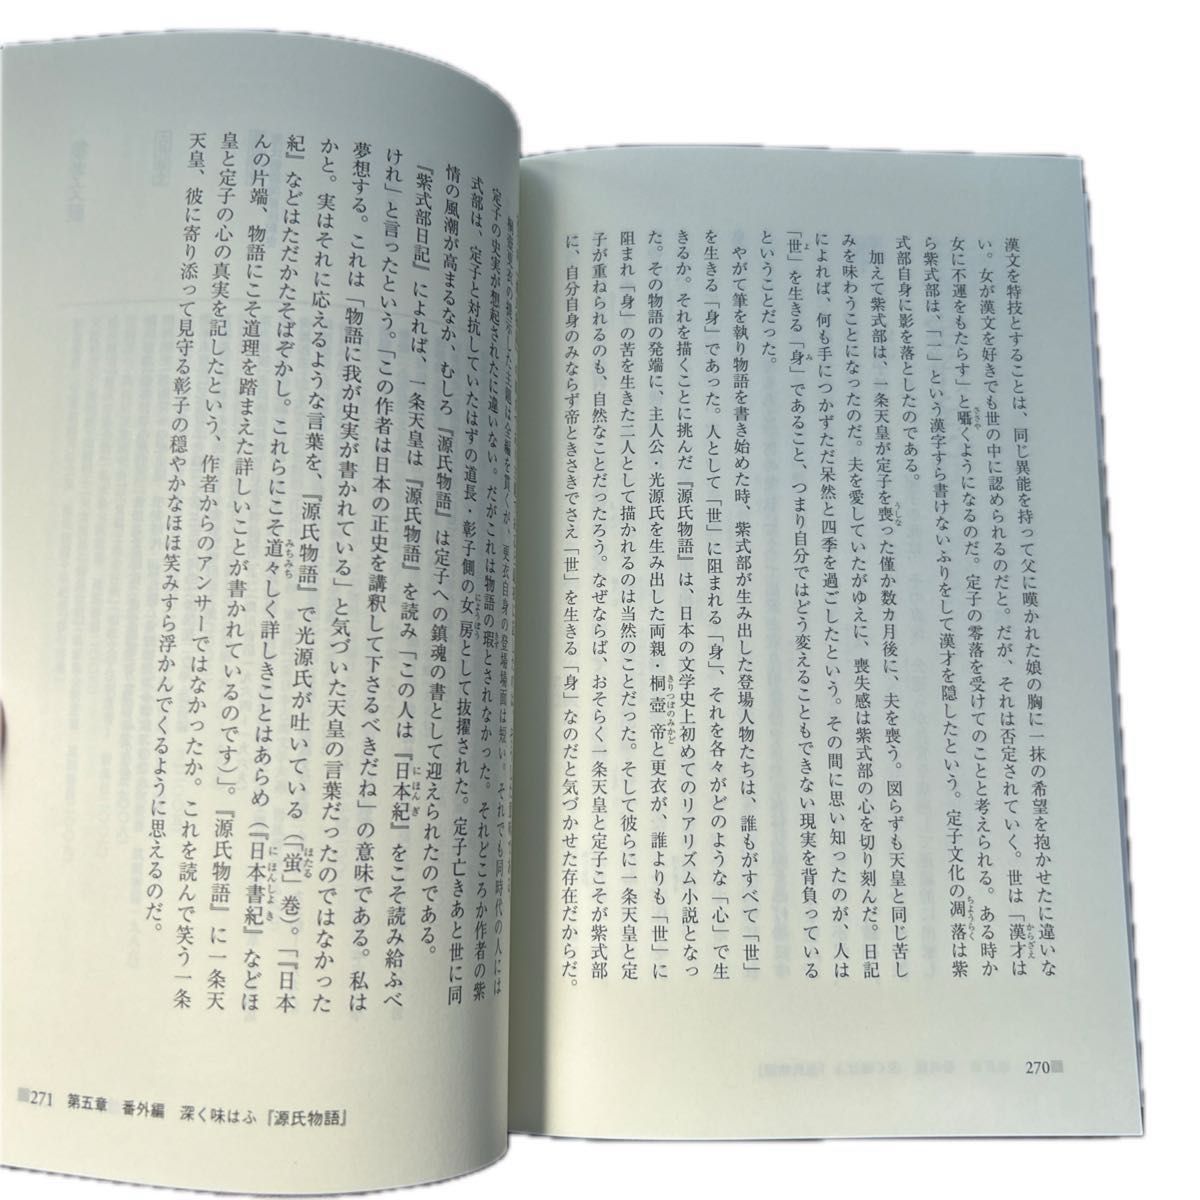 [セット] 駿台文庫「古典文法10題ドリル」と山本淳子「平安人の心で『源氏物語』を読む」